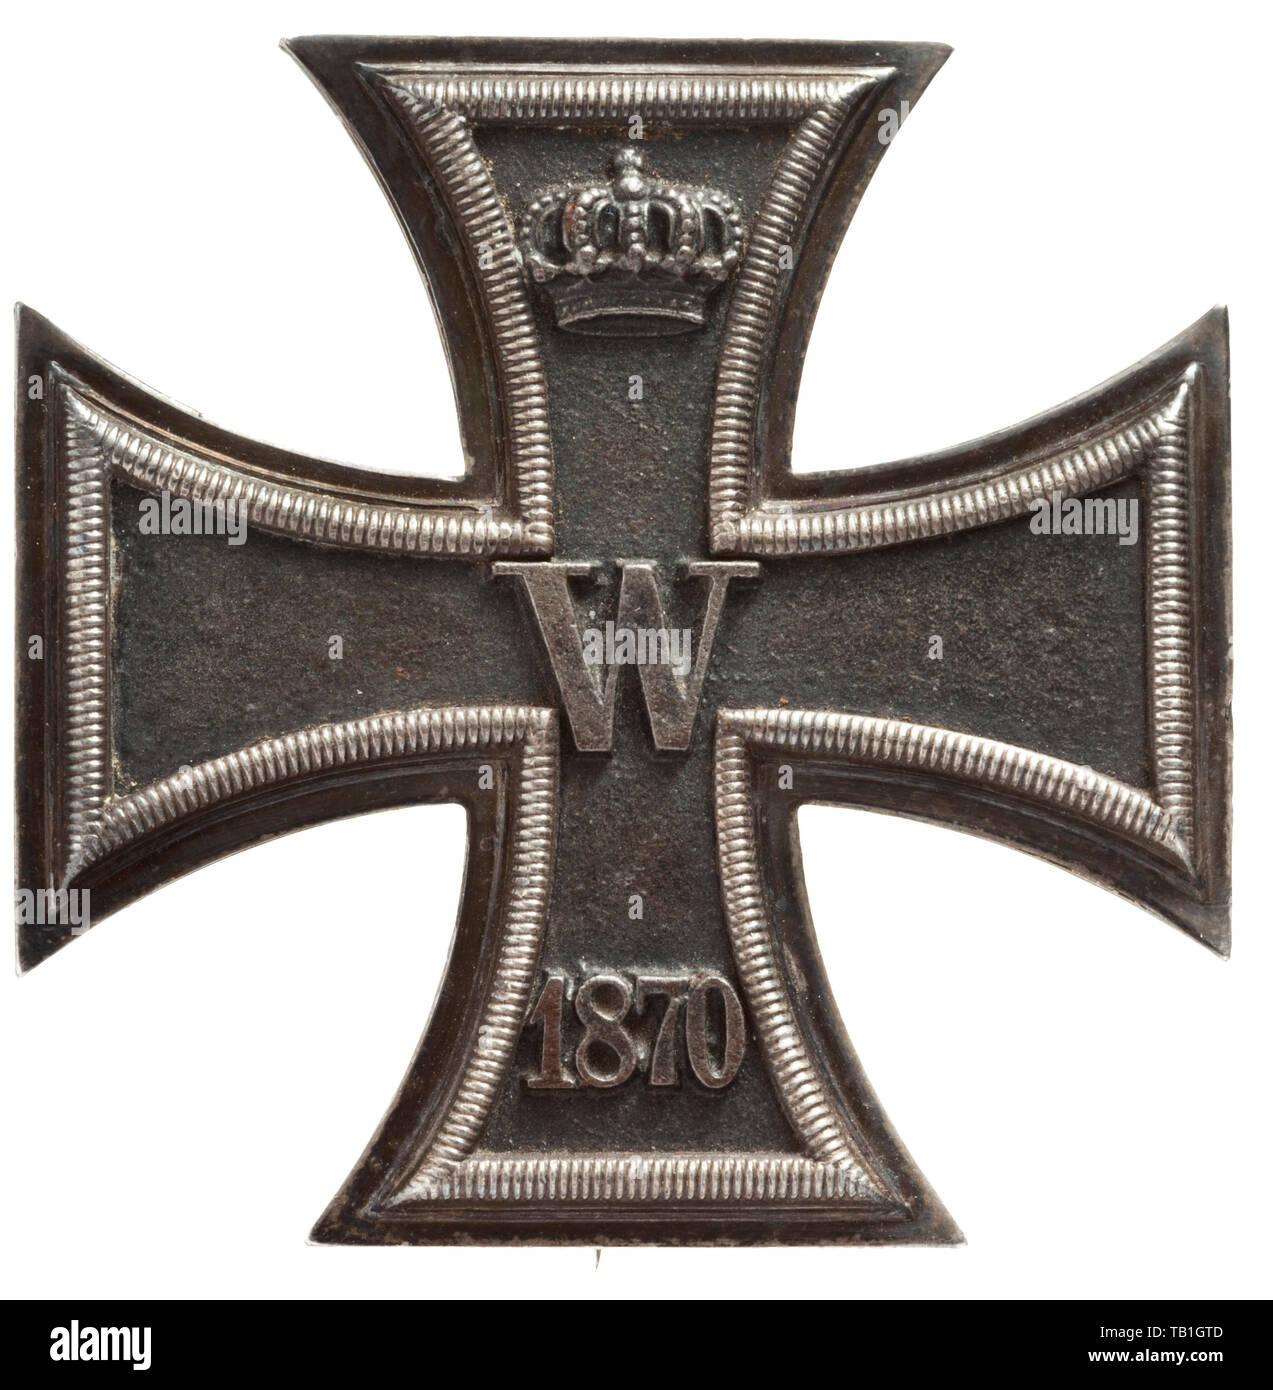 Ordensband 0,30m Preussen Eisernes Kreuz 1870-1914 für Nichtkämpfer usw.